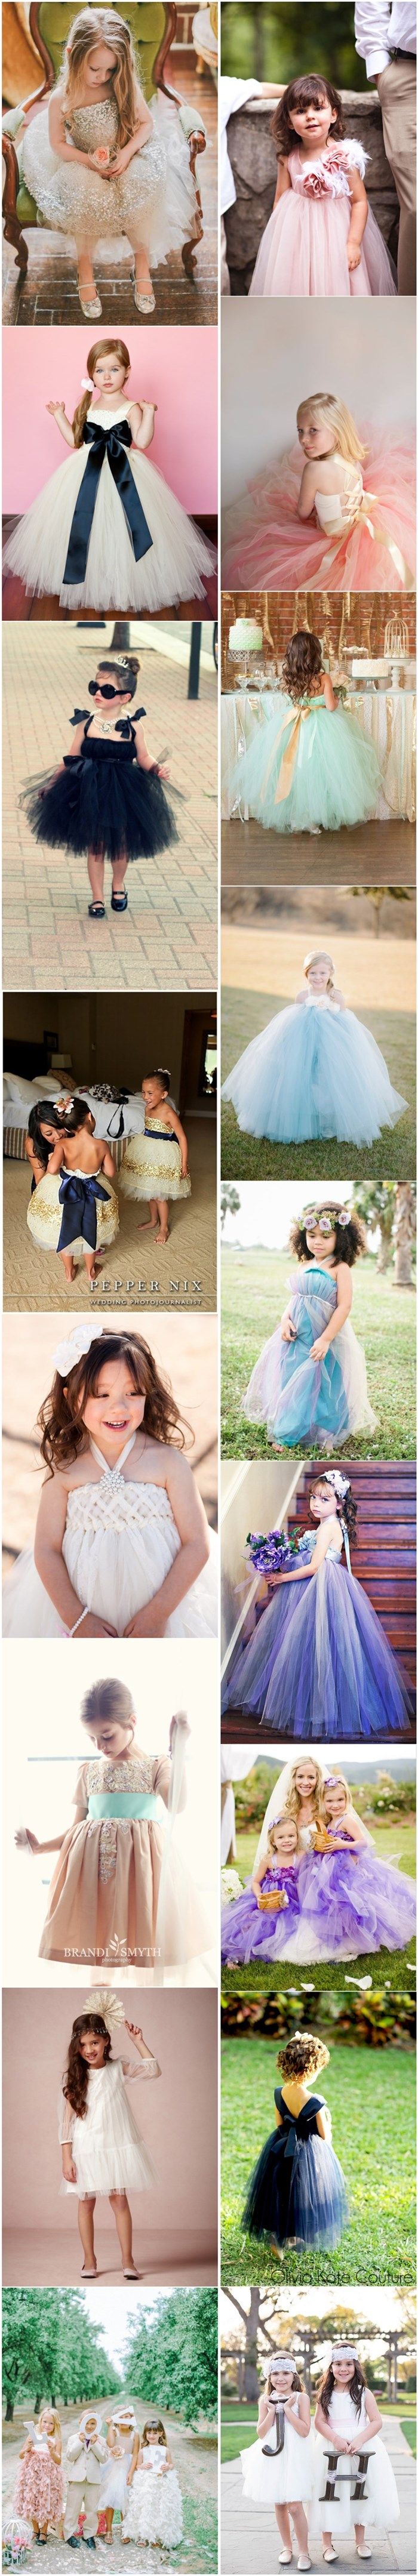 cute flower gild dresses- little girl dresses for wedding